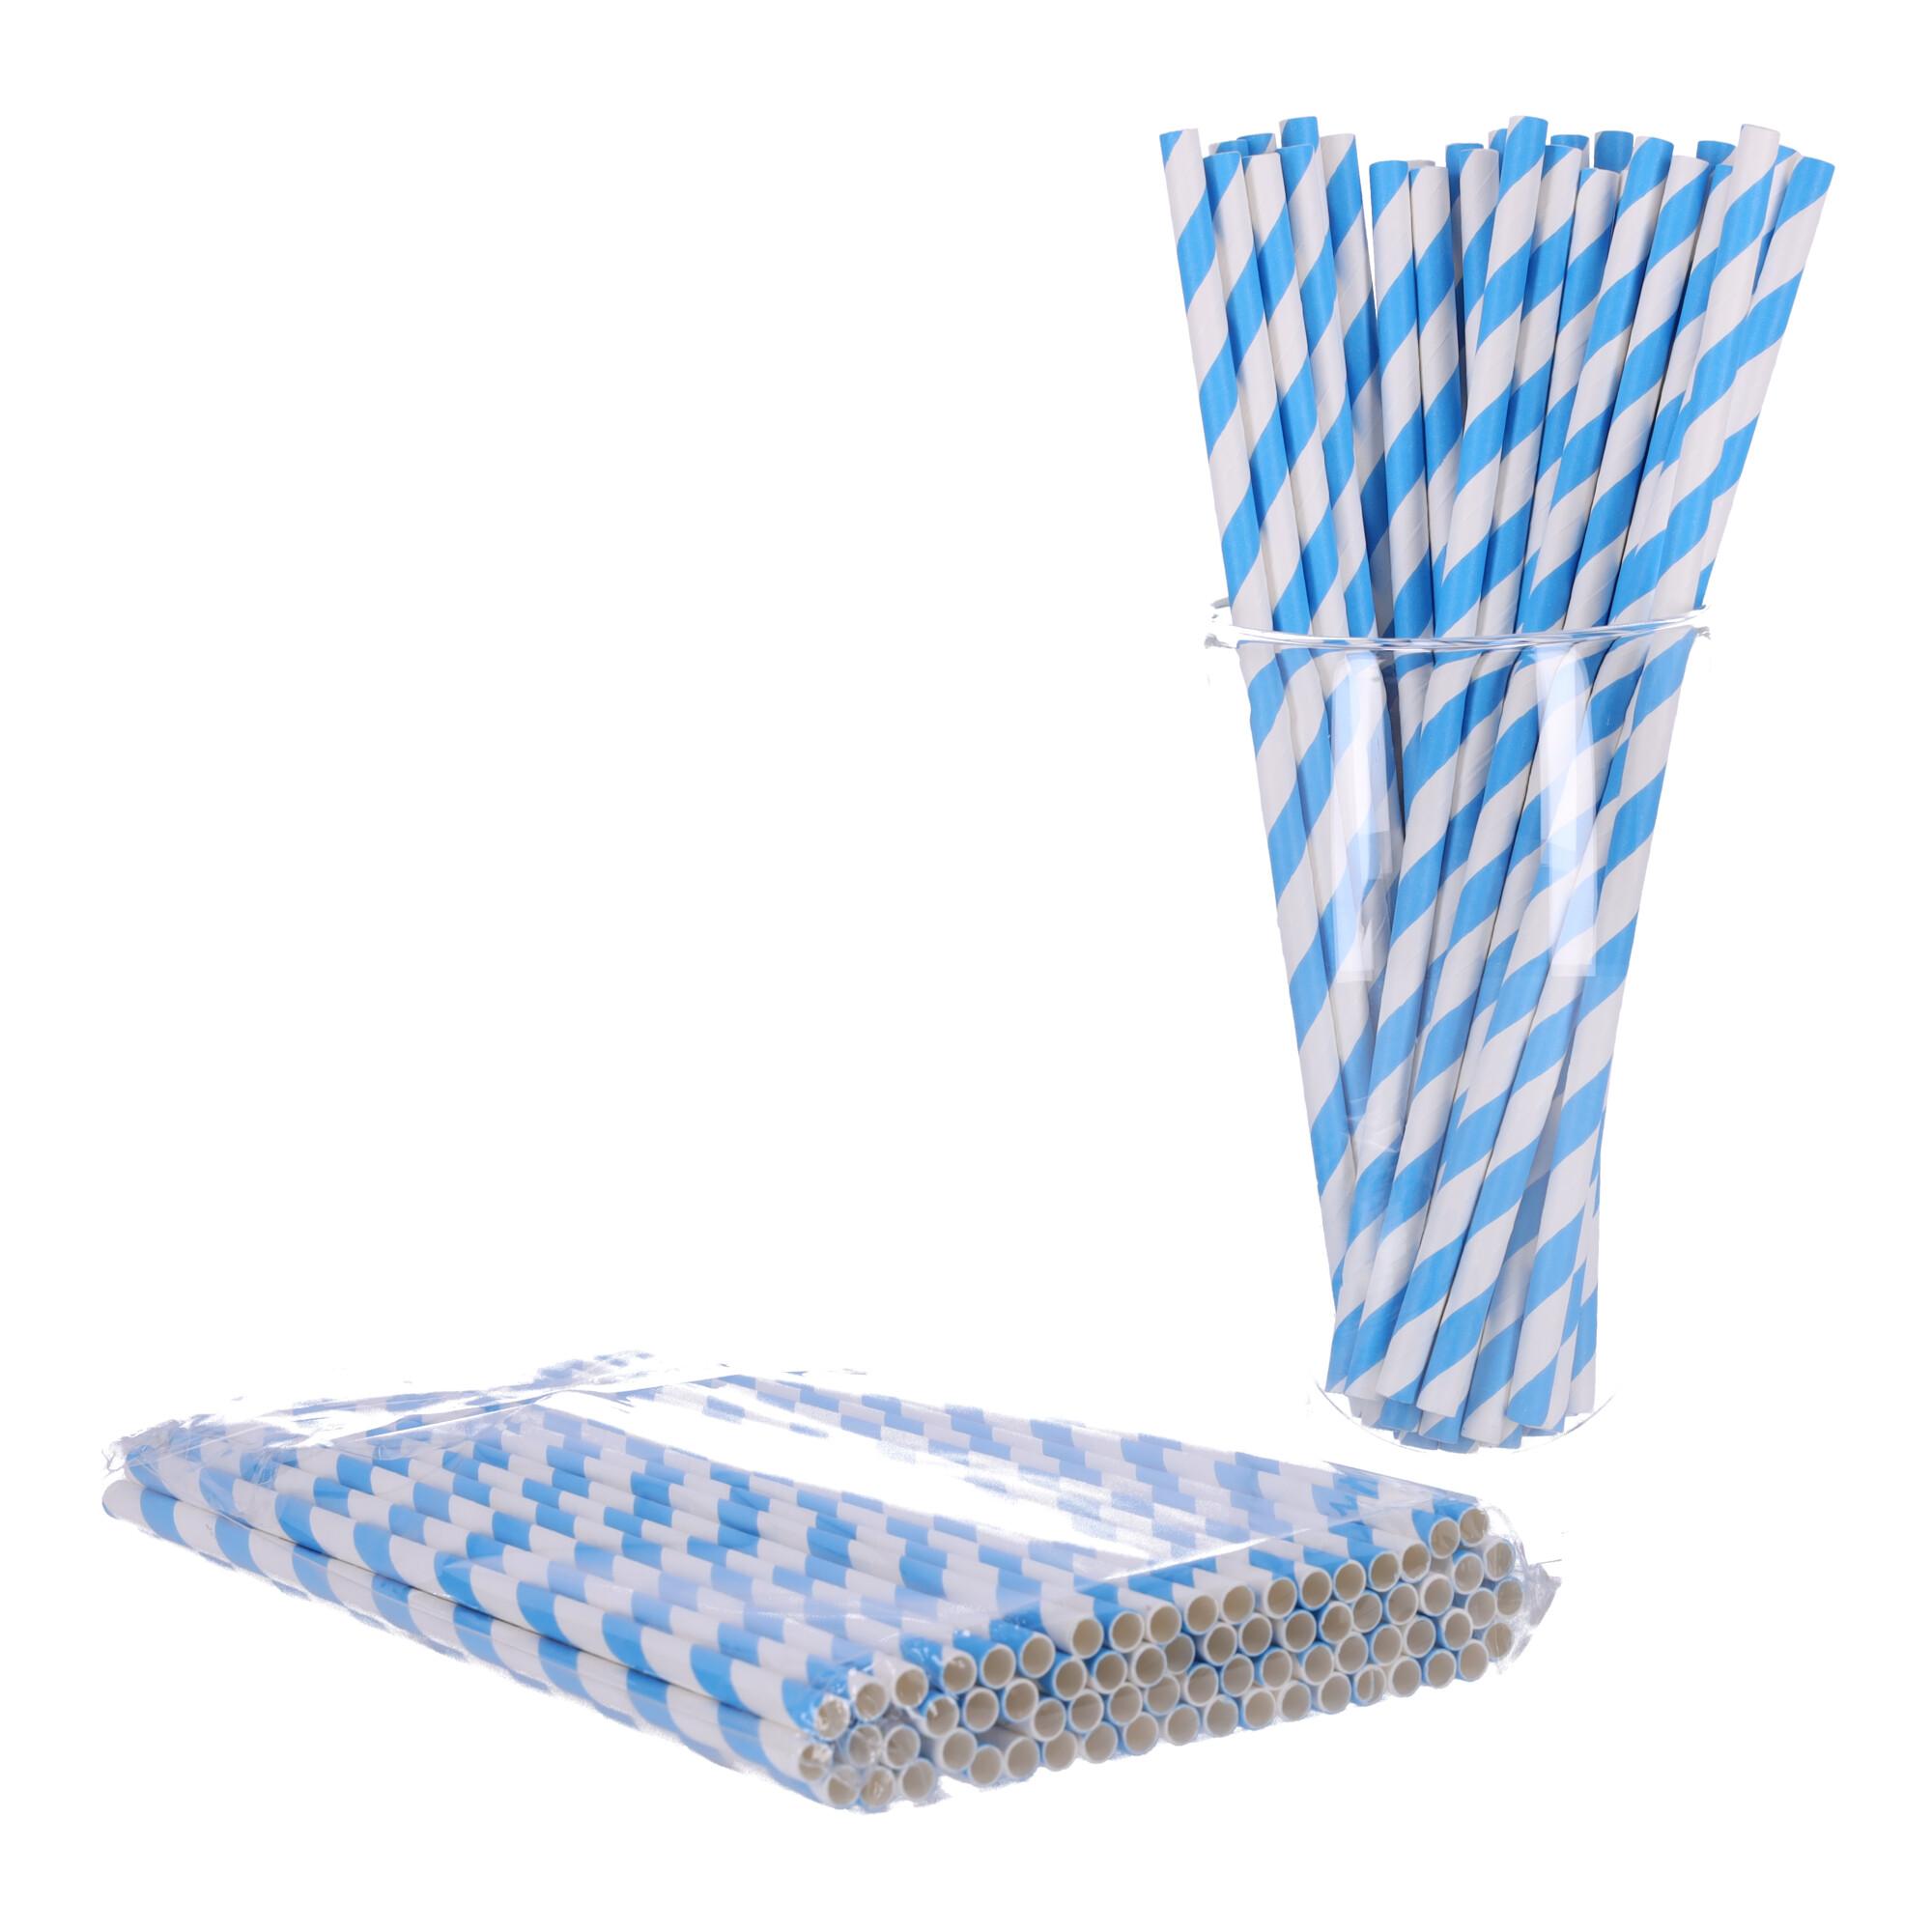 Paper straws 197mm x 6mm, 100 pcs - blue